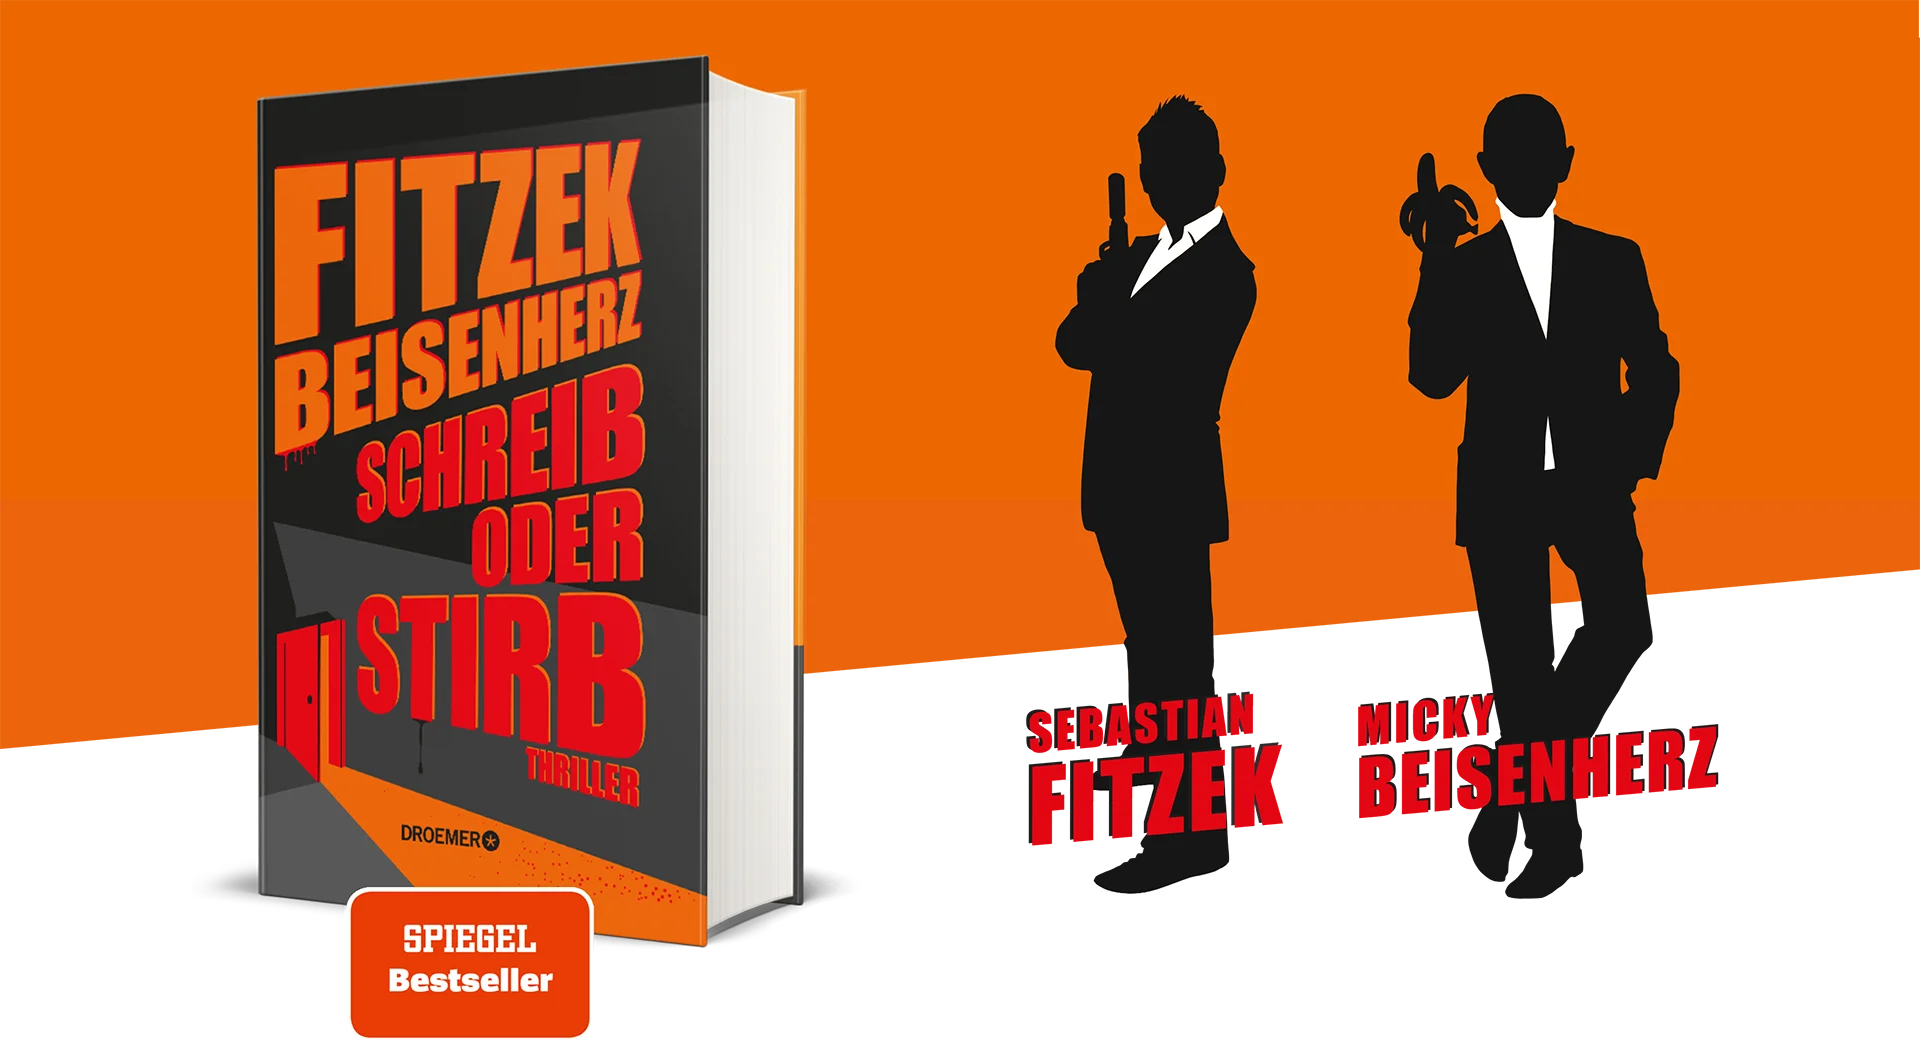 Ein Bild zeigt das Buch sowie Sebastian Fitzek und Micky Beisenherz als Schatten für das buch "Schreib oder Stirb- Der Buchraub" von Sebatsian Fitzek und Micky Beisenherz.